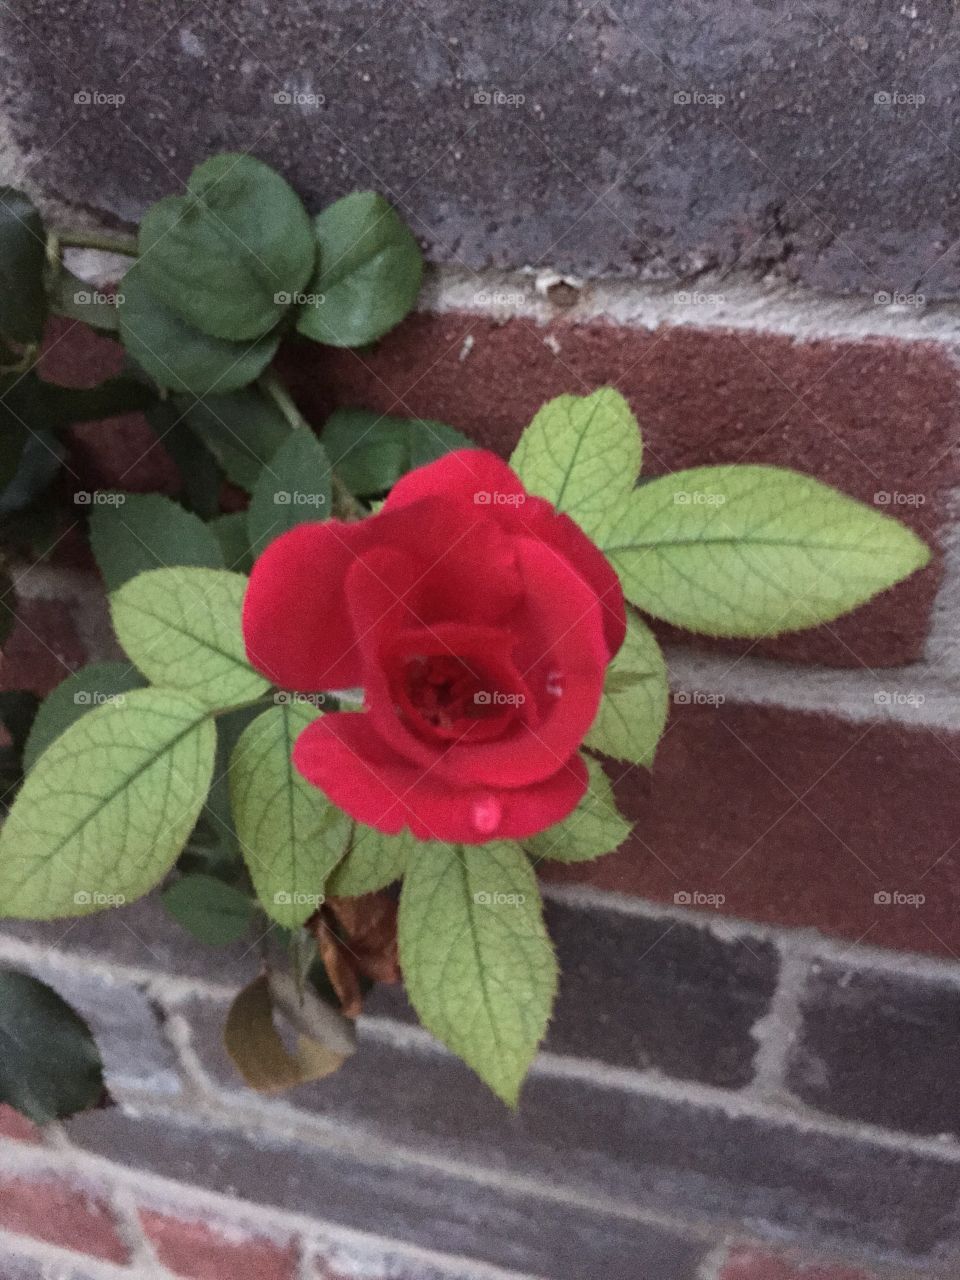 Opening Rose